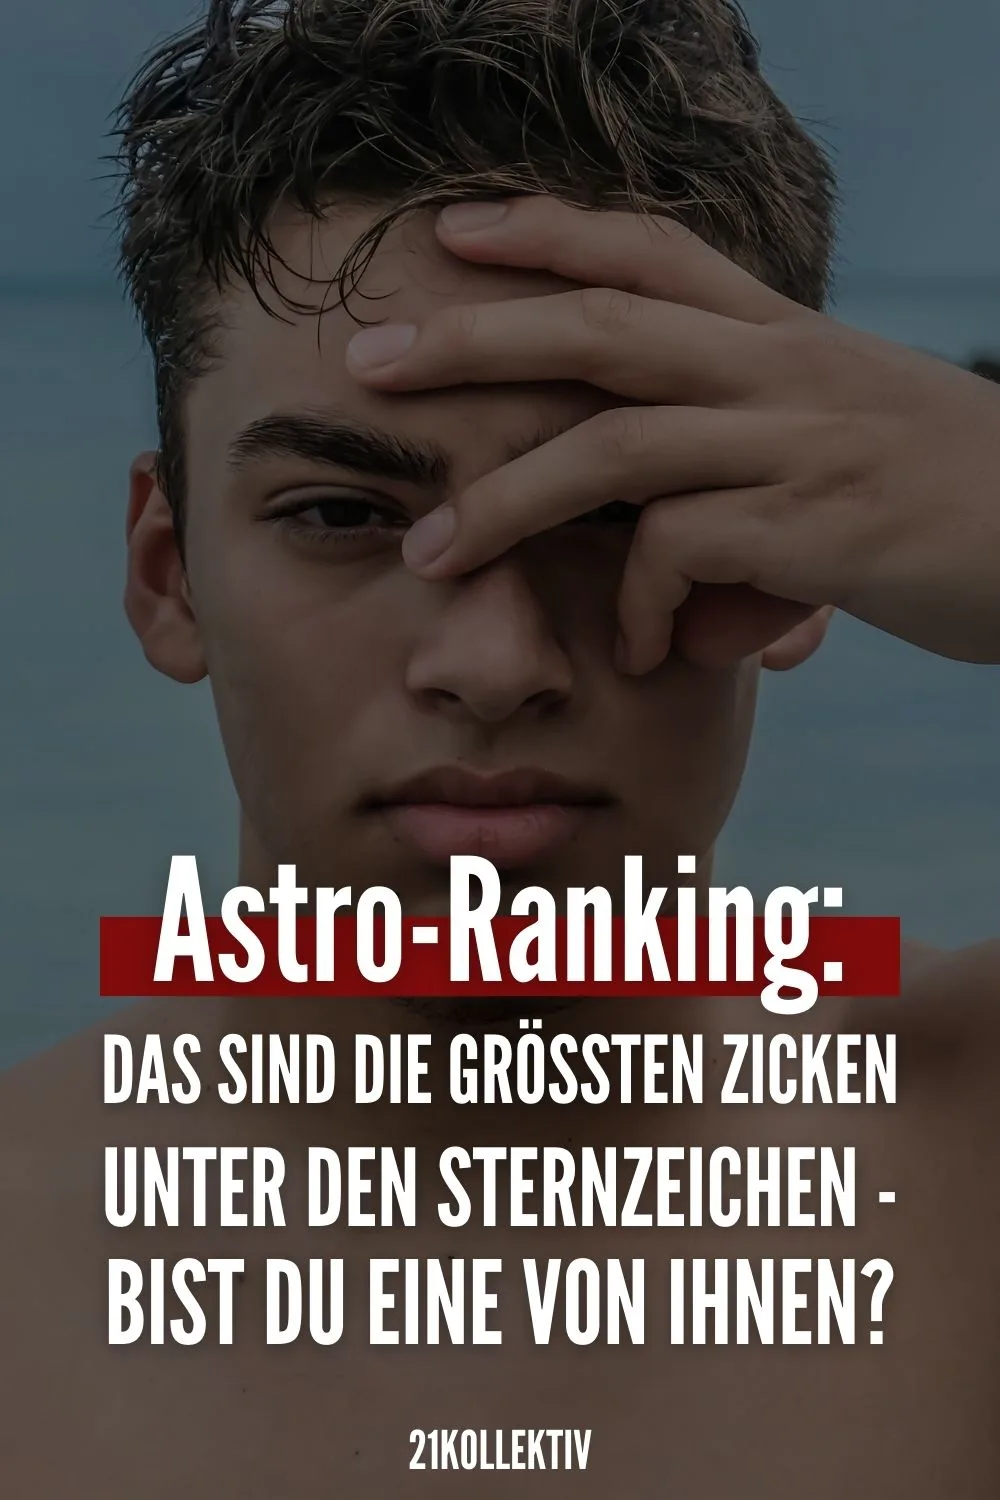 Astro-Ranking: DAS sind die größten Zicken unter den Sternzeichen - bist du eine von ihnen?